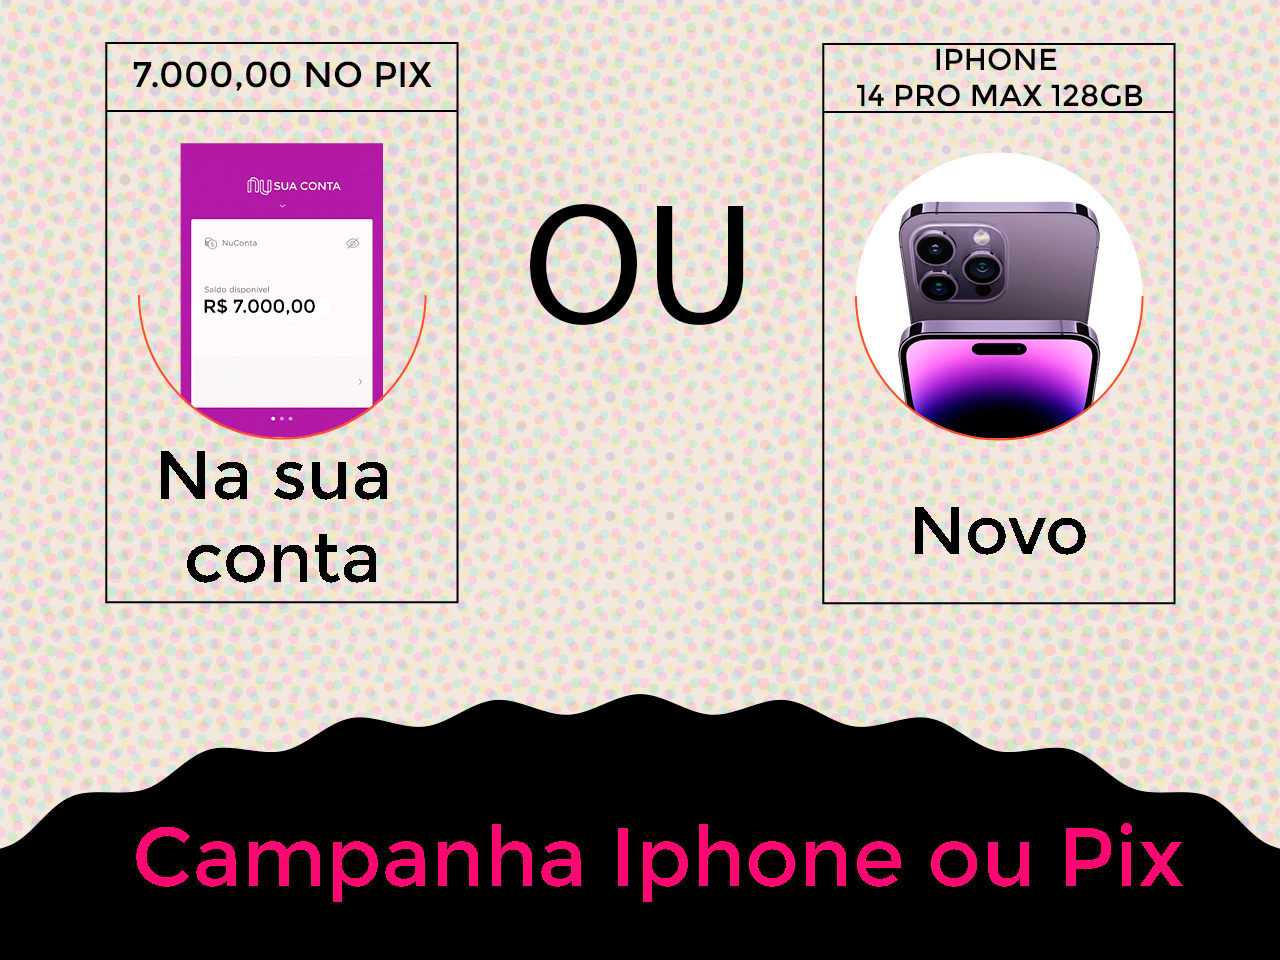 IPHONE 14 PRO MAX OU R$ 7000,00 NO PIX